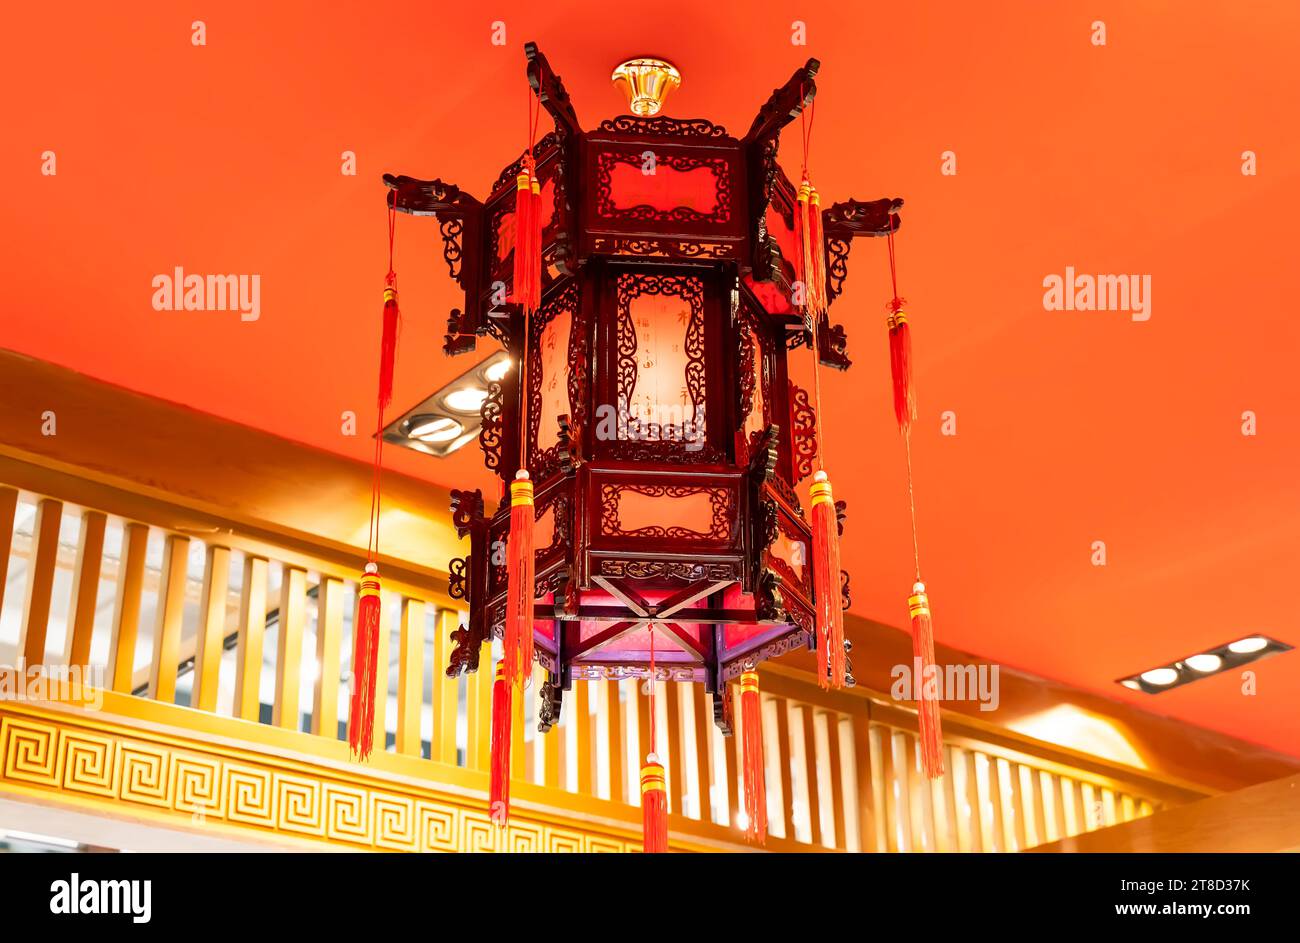 Décorations de lanterne chinoise dans la structure de maison chinoise historique vintage, traduction de texte chinois pour le : bon bénir pour la nouvelle année Banque D'Images